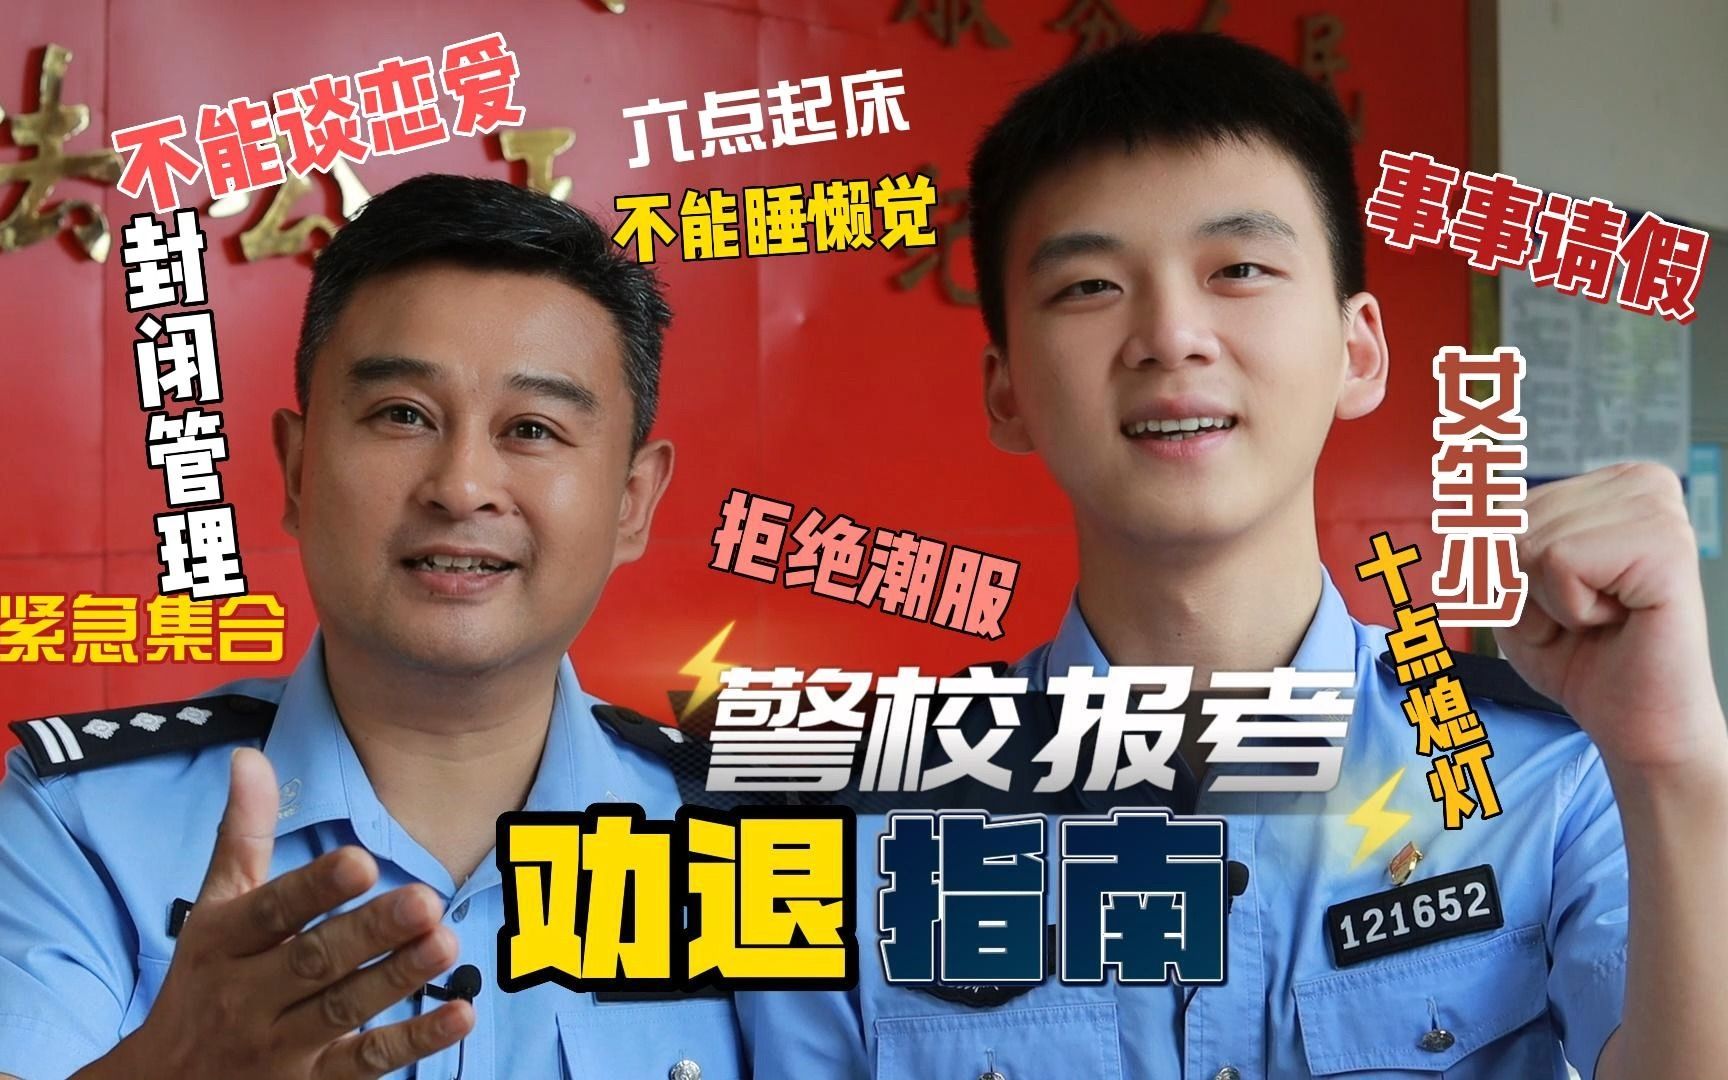 【图片新闻】警校携手 守护青春-中国民航大学